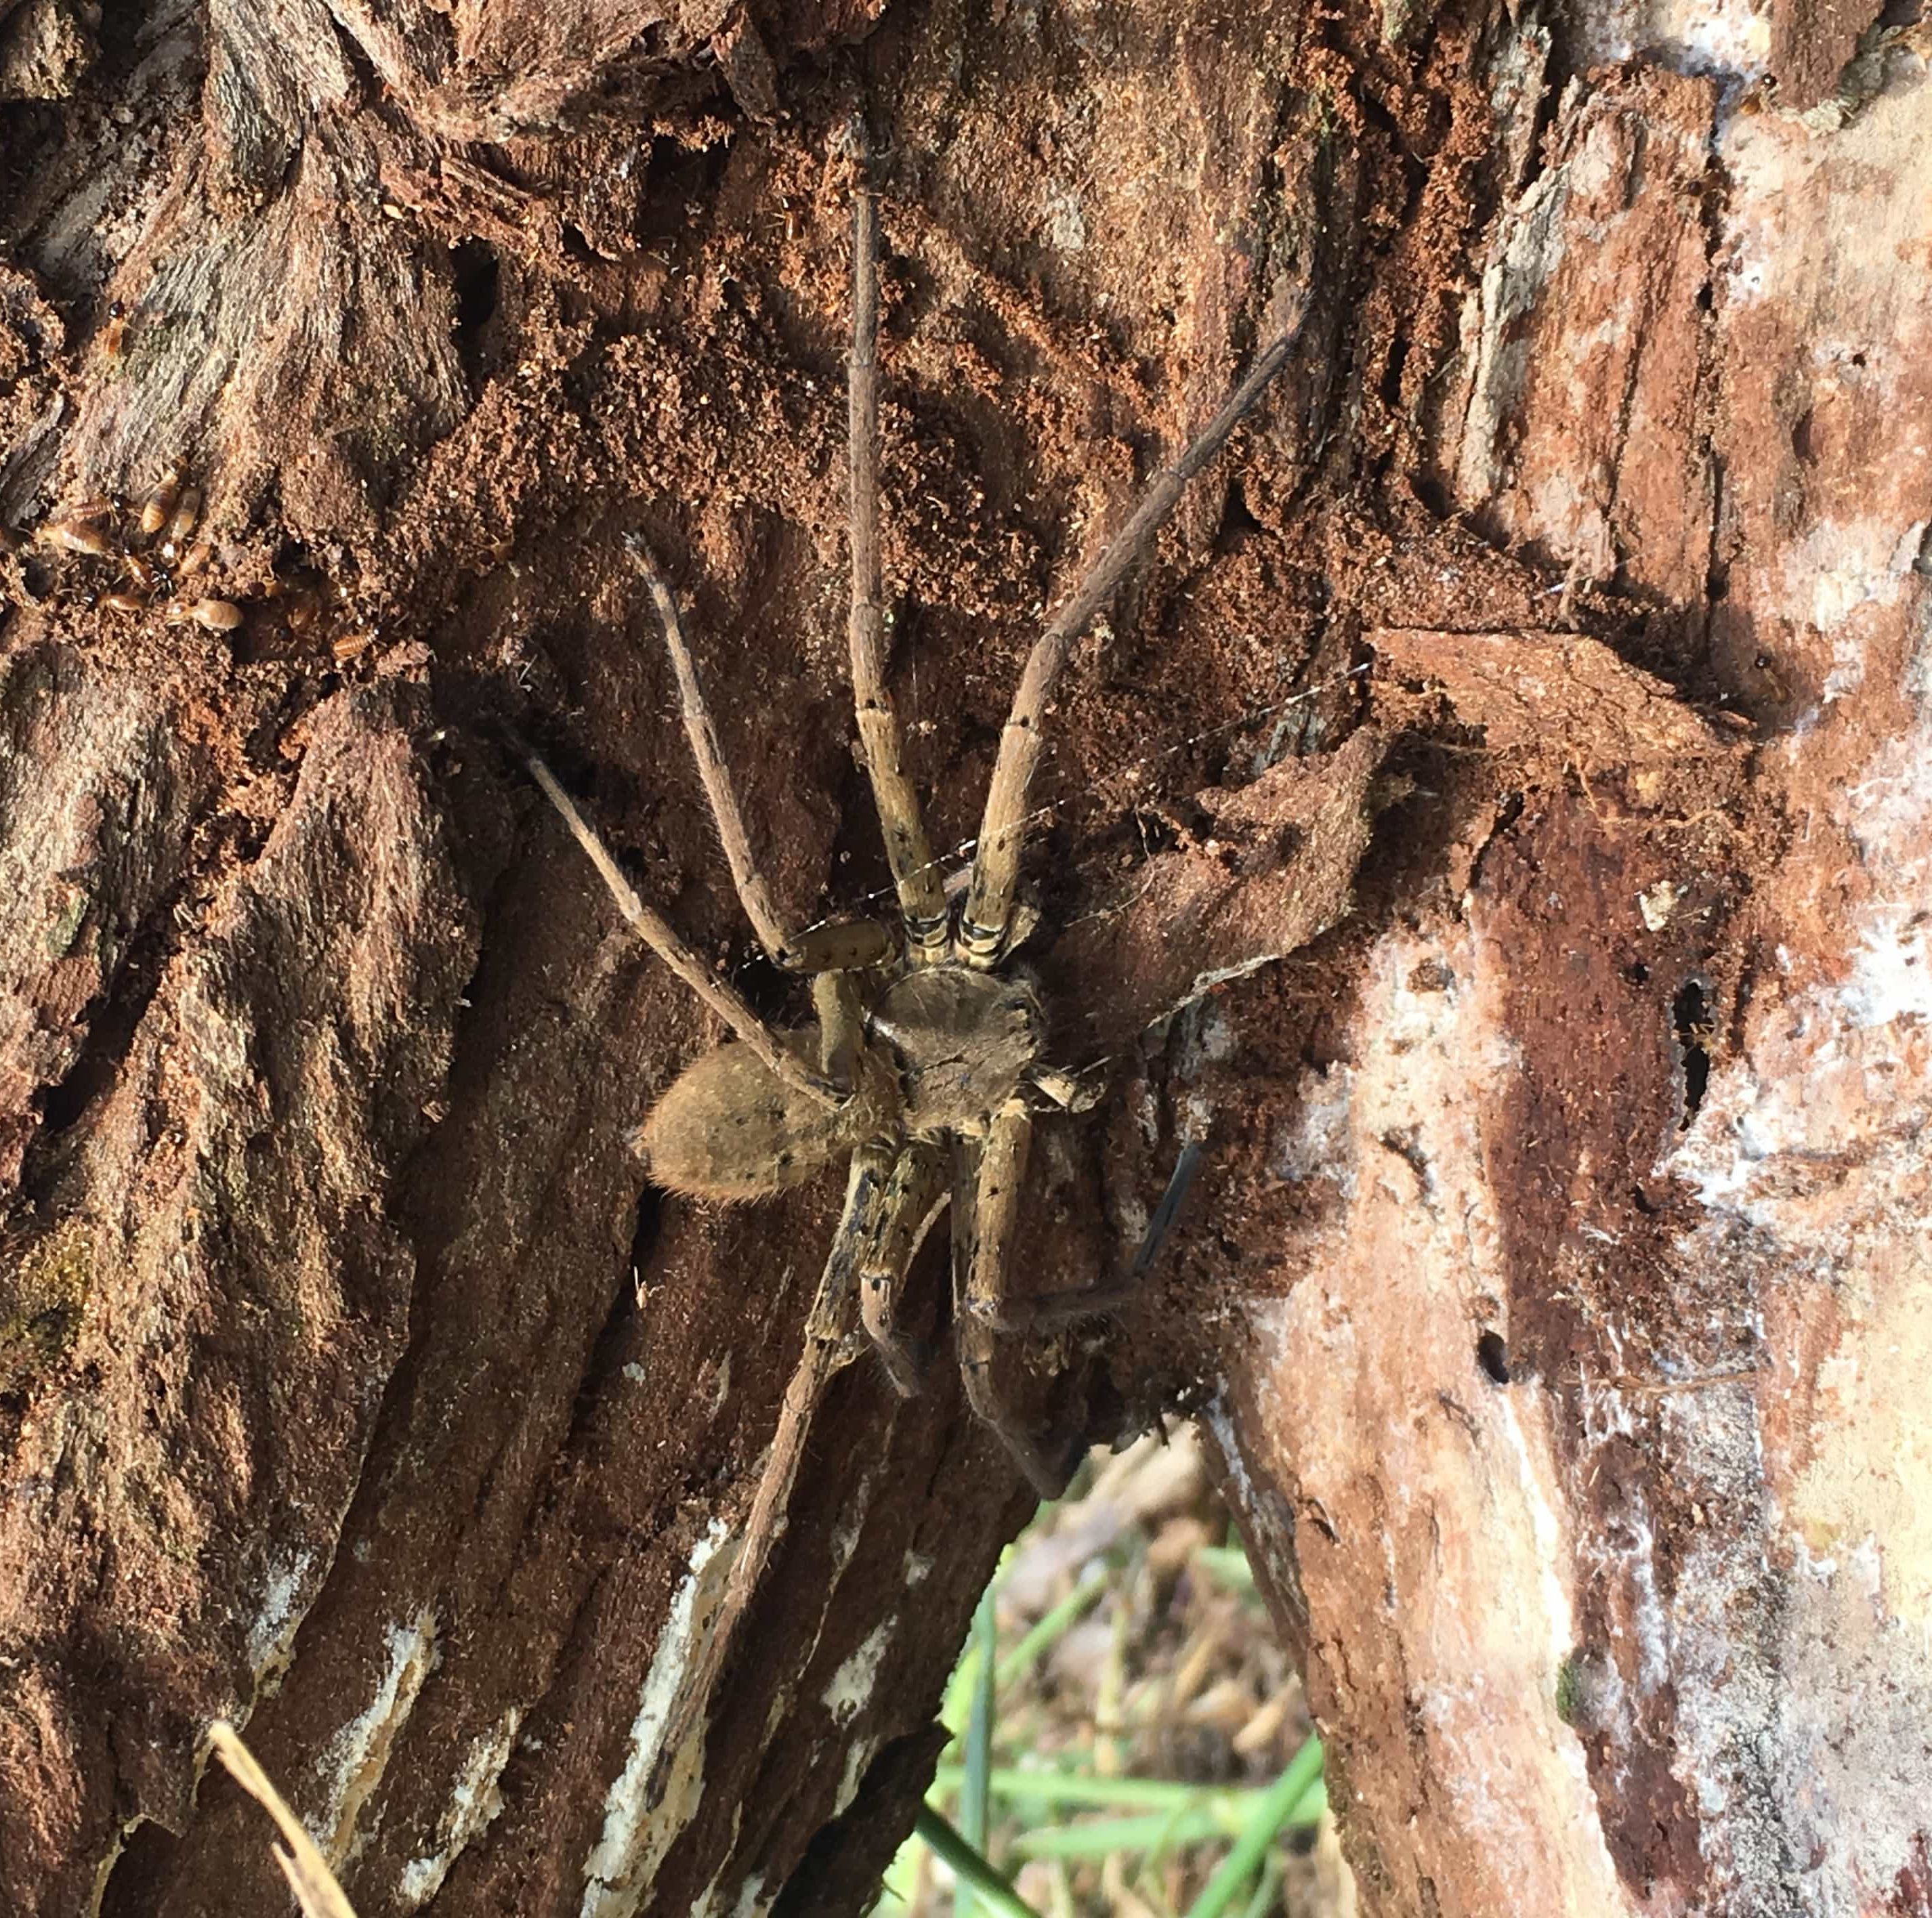 Picture of Heteropoda venatoria (Huntsman Spider) - Dorsal